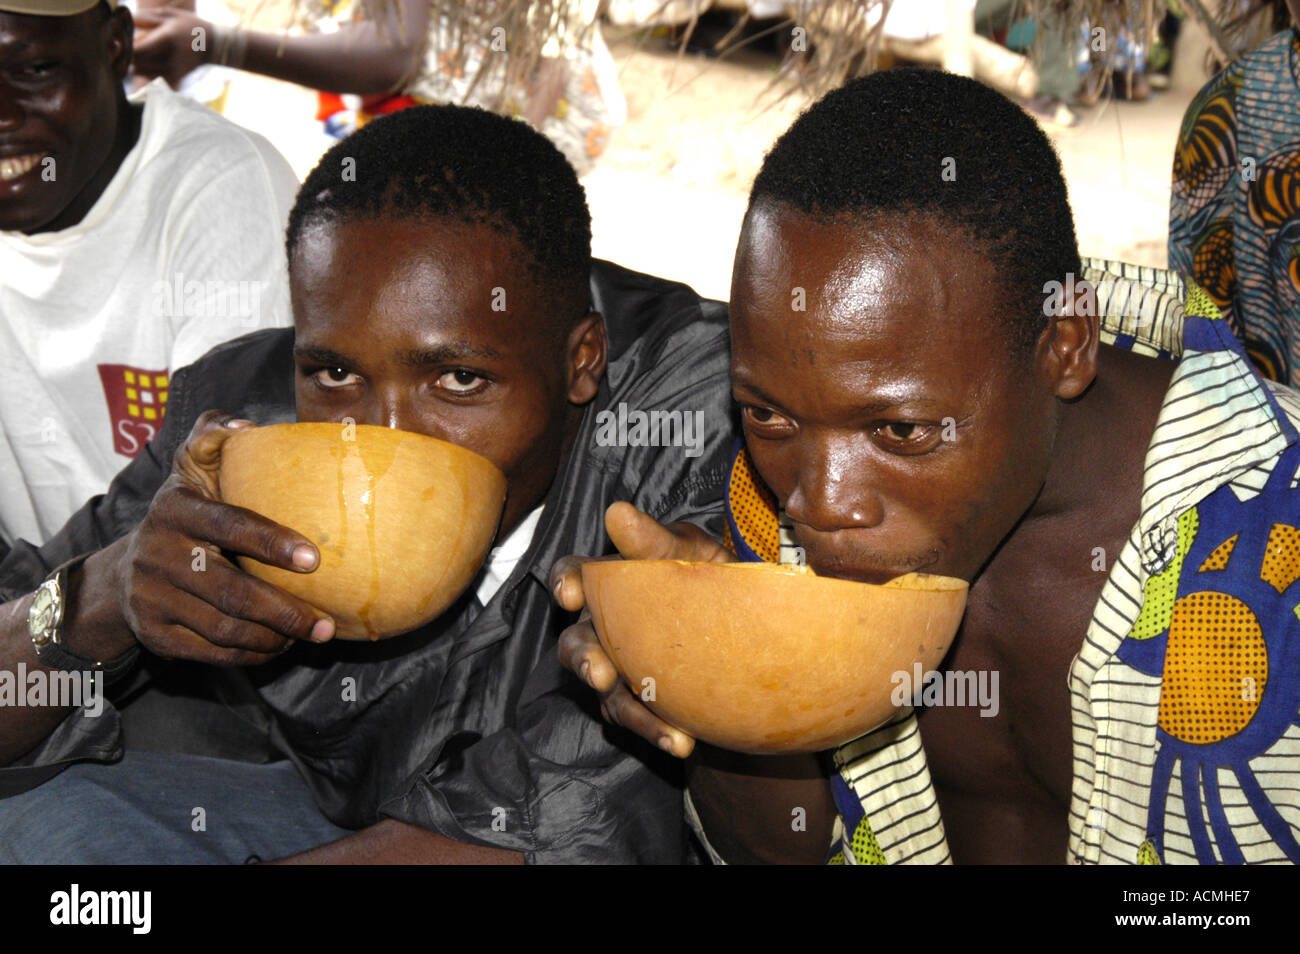 Hommes buvant tchook (bière de mil) en Afrique de l'Ouest Togo Agbati marché Banque D'Images